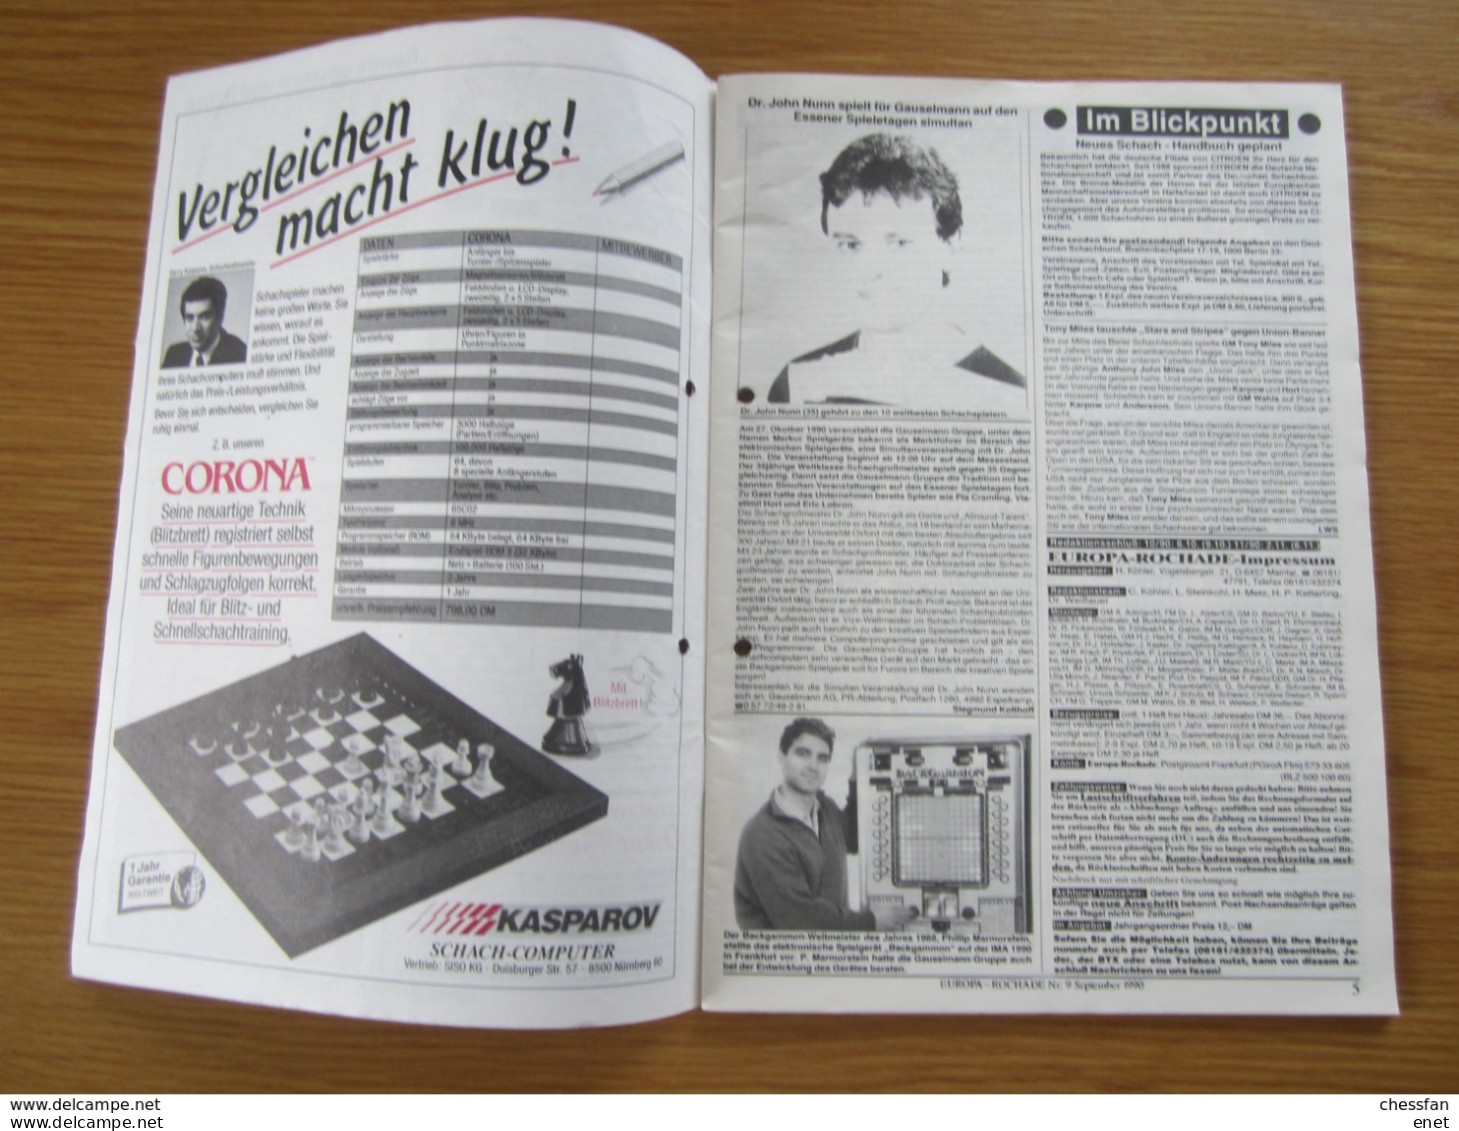 Schach Chess Ajedrez échecs - Europa-Rochade -Nr 9 / 1990 - Sports